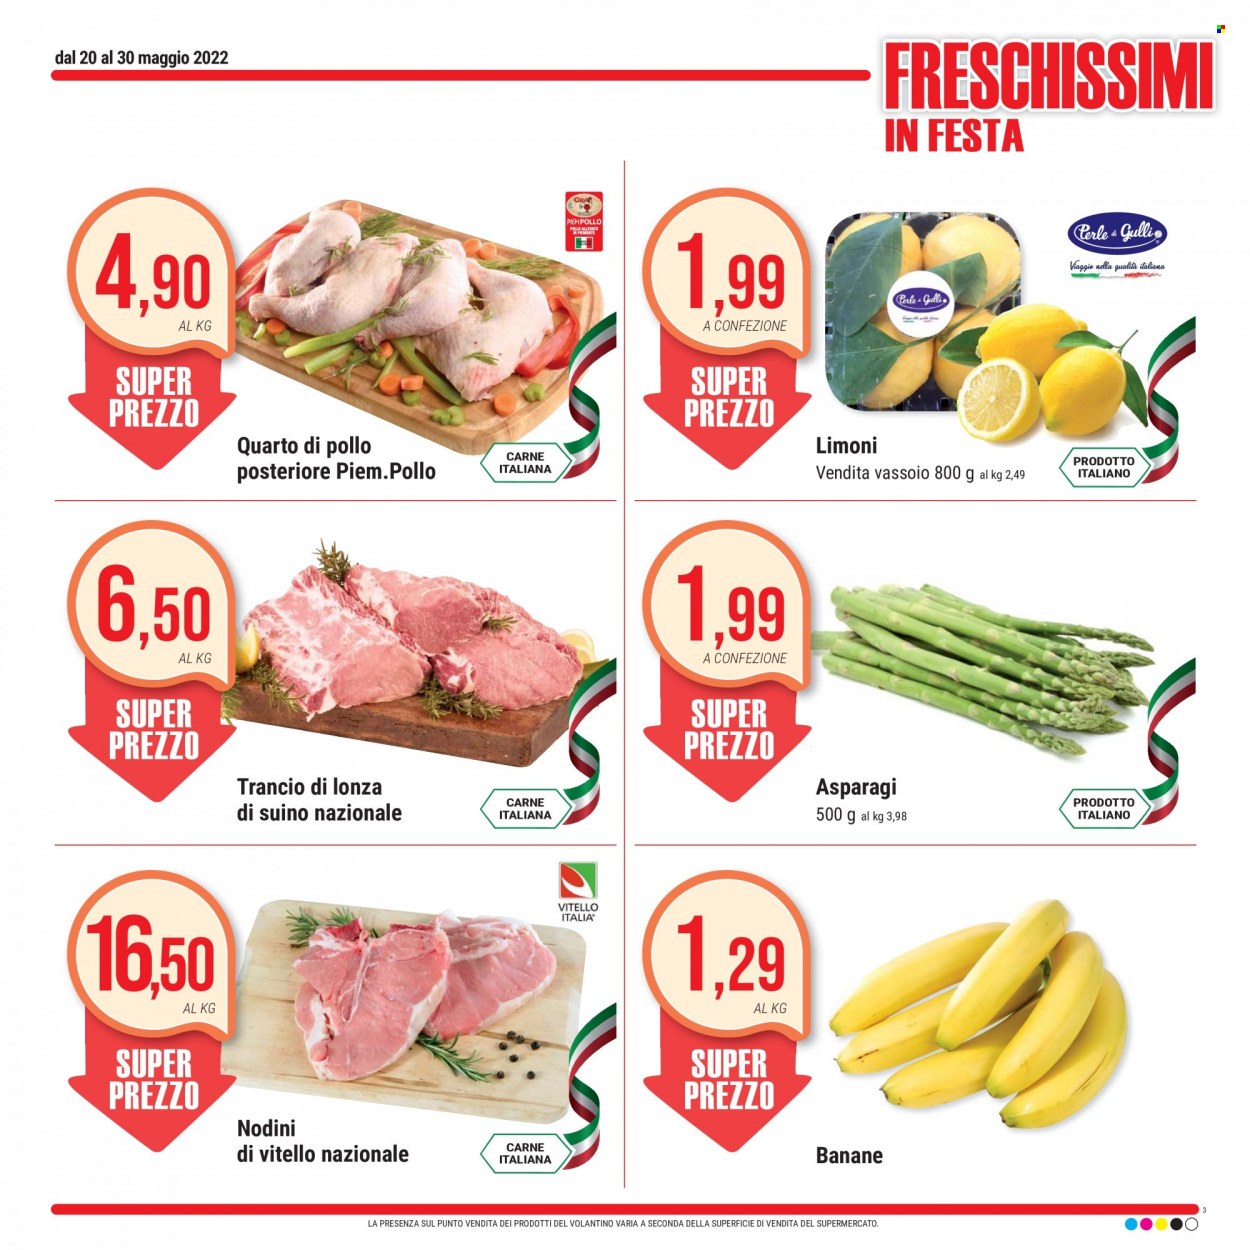 thumbnail - Volantino Gulliver - 20/5/2022 - 30/5/2022 - Prodotti in offerta - asparagi, banane, limoni, vitello, lonza di suino, suino. Pagina 3.